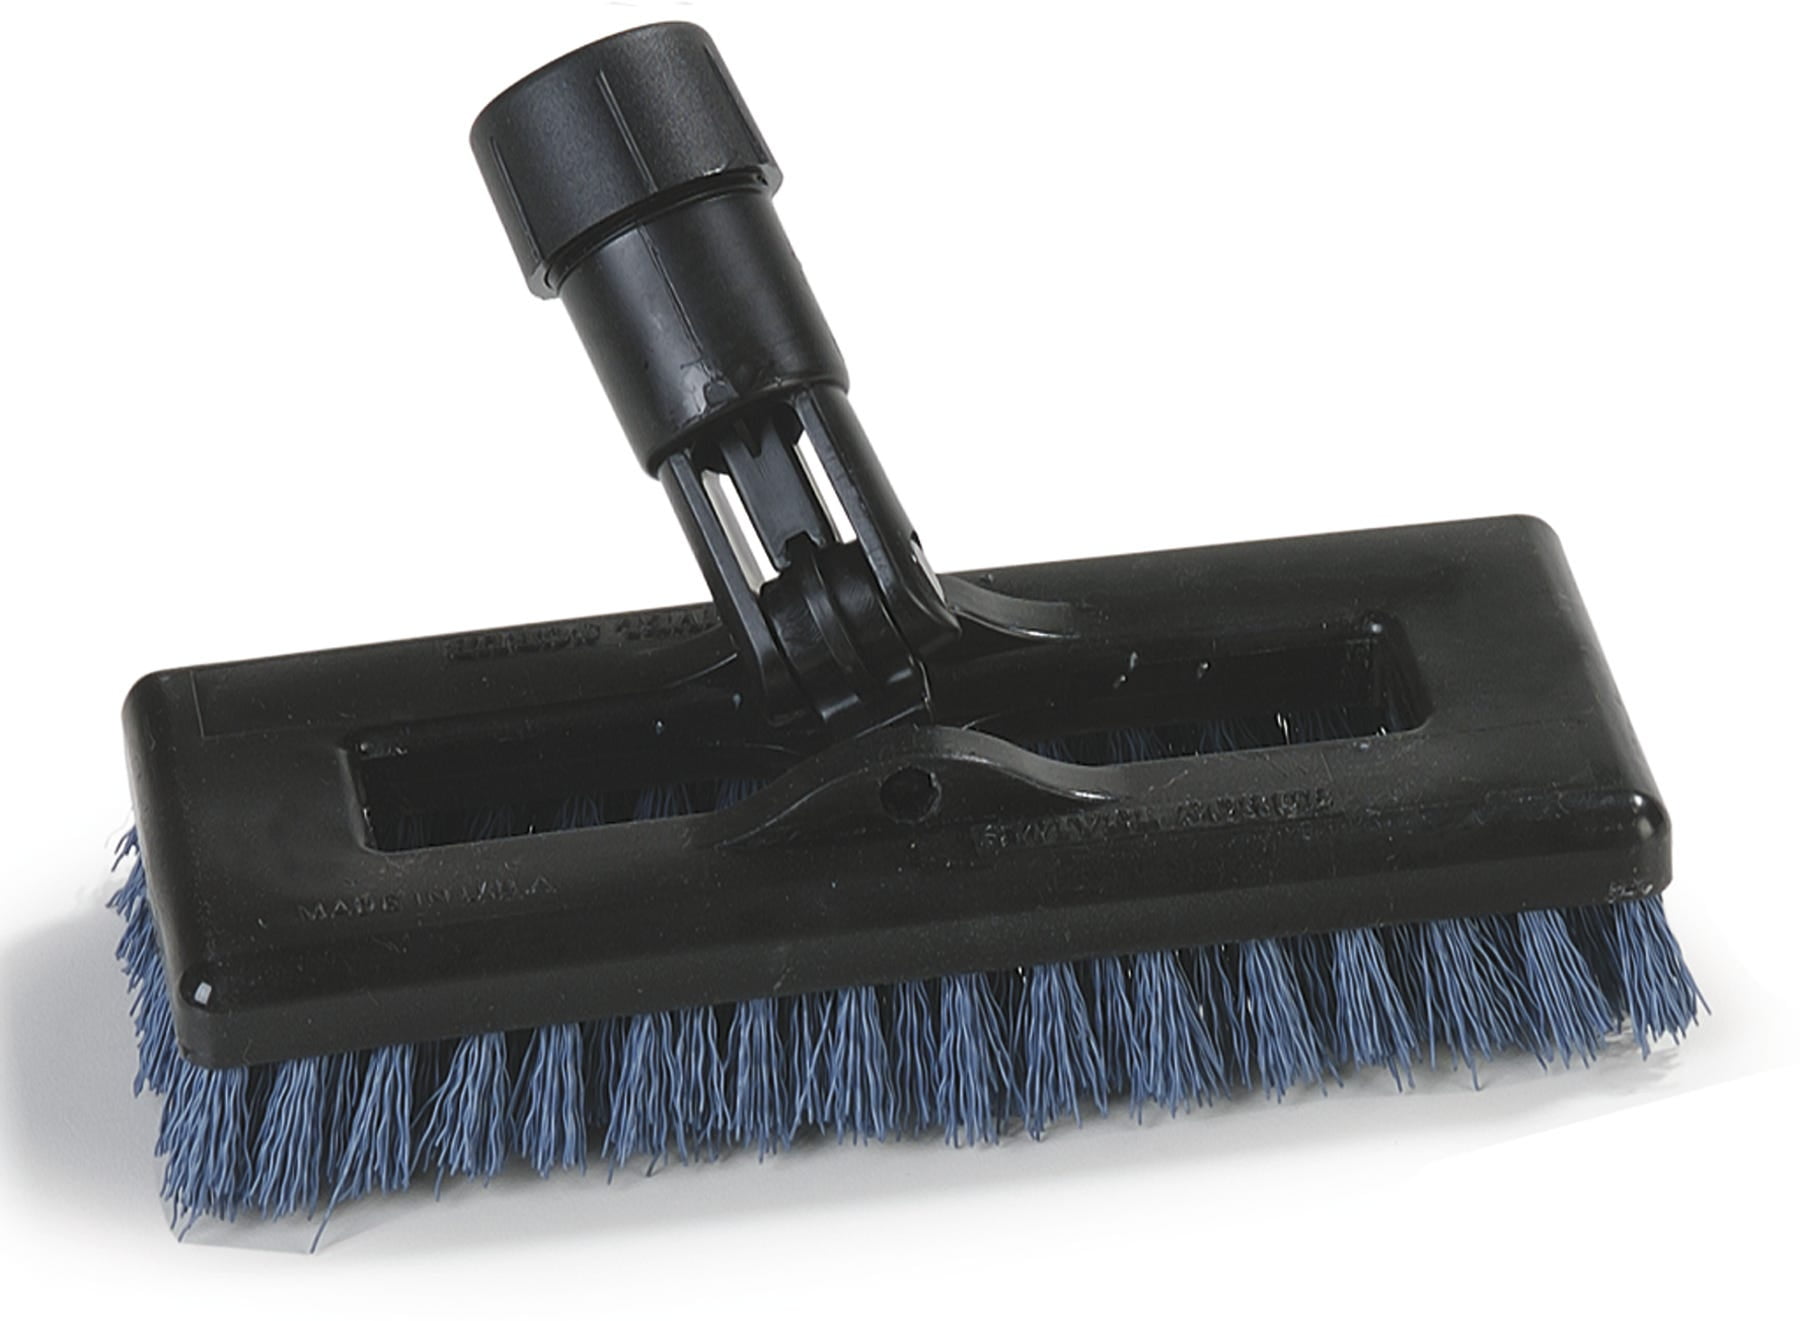 NEW Carlisle Rotary Floor Scrubber Brush g 9933723 Box Of 2 